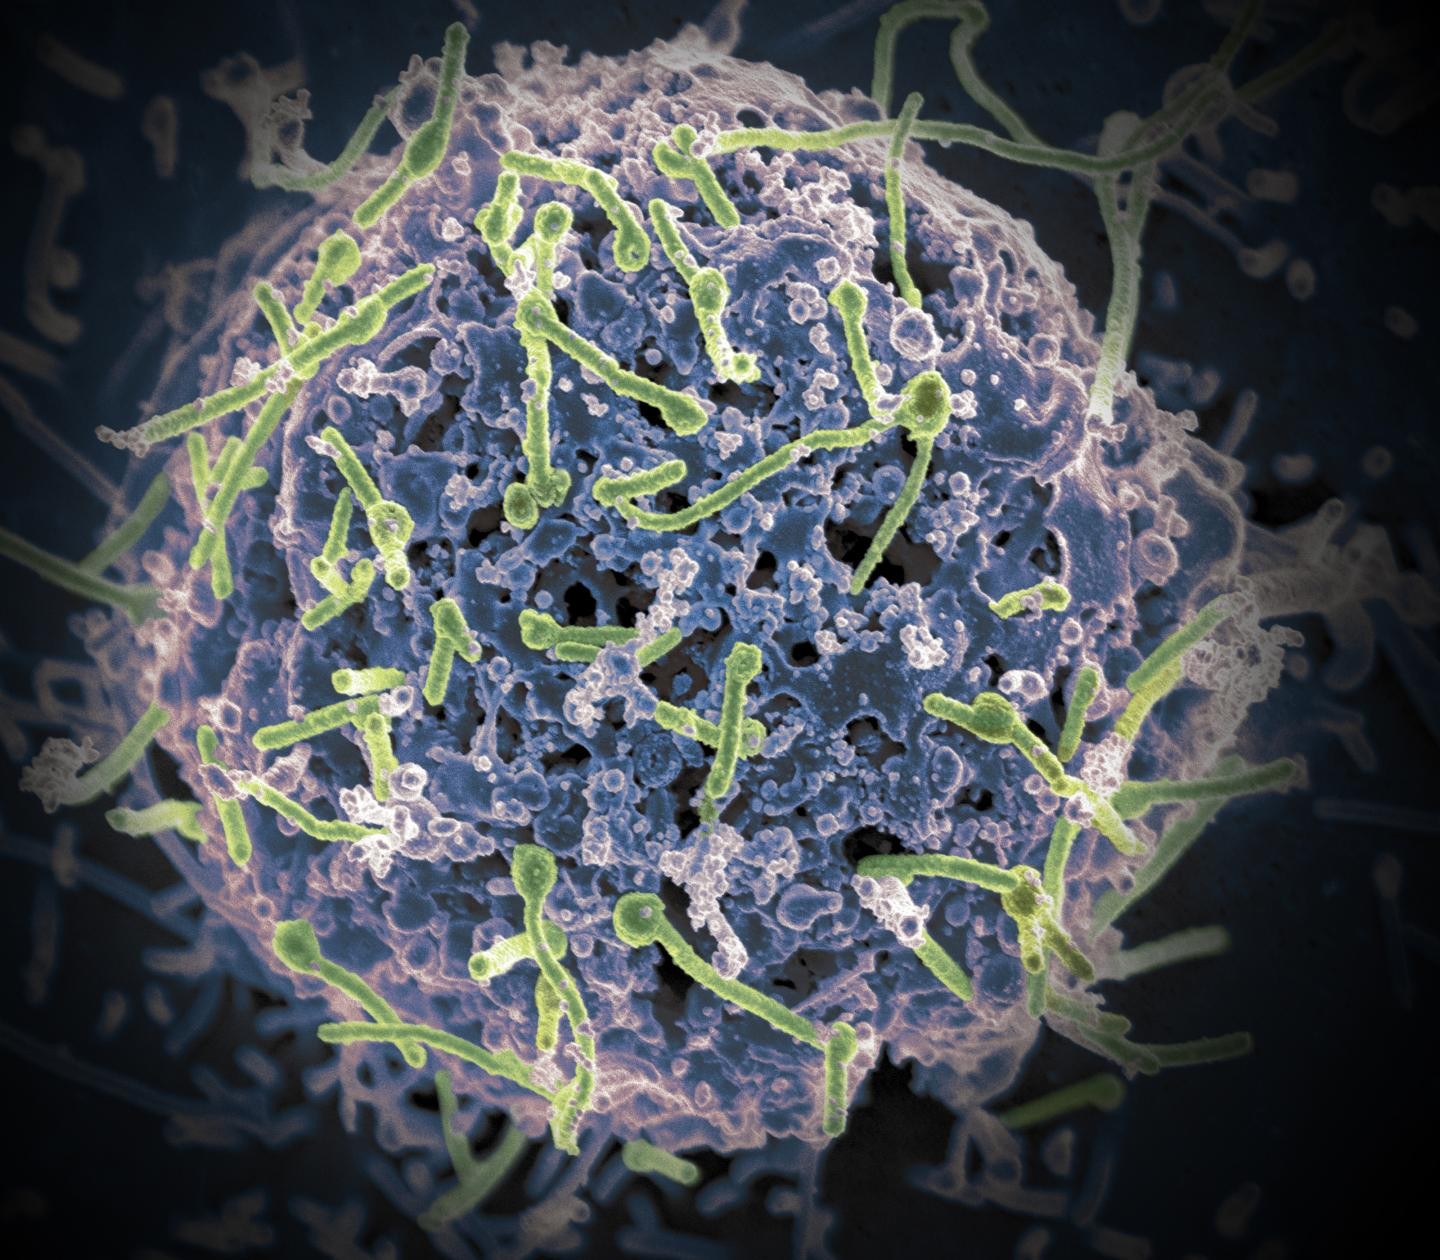 Nova vacina demonstra eficácia contra 4 tipos de vírus que causam ebola (Foto: NIAID)